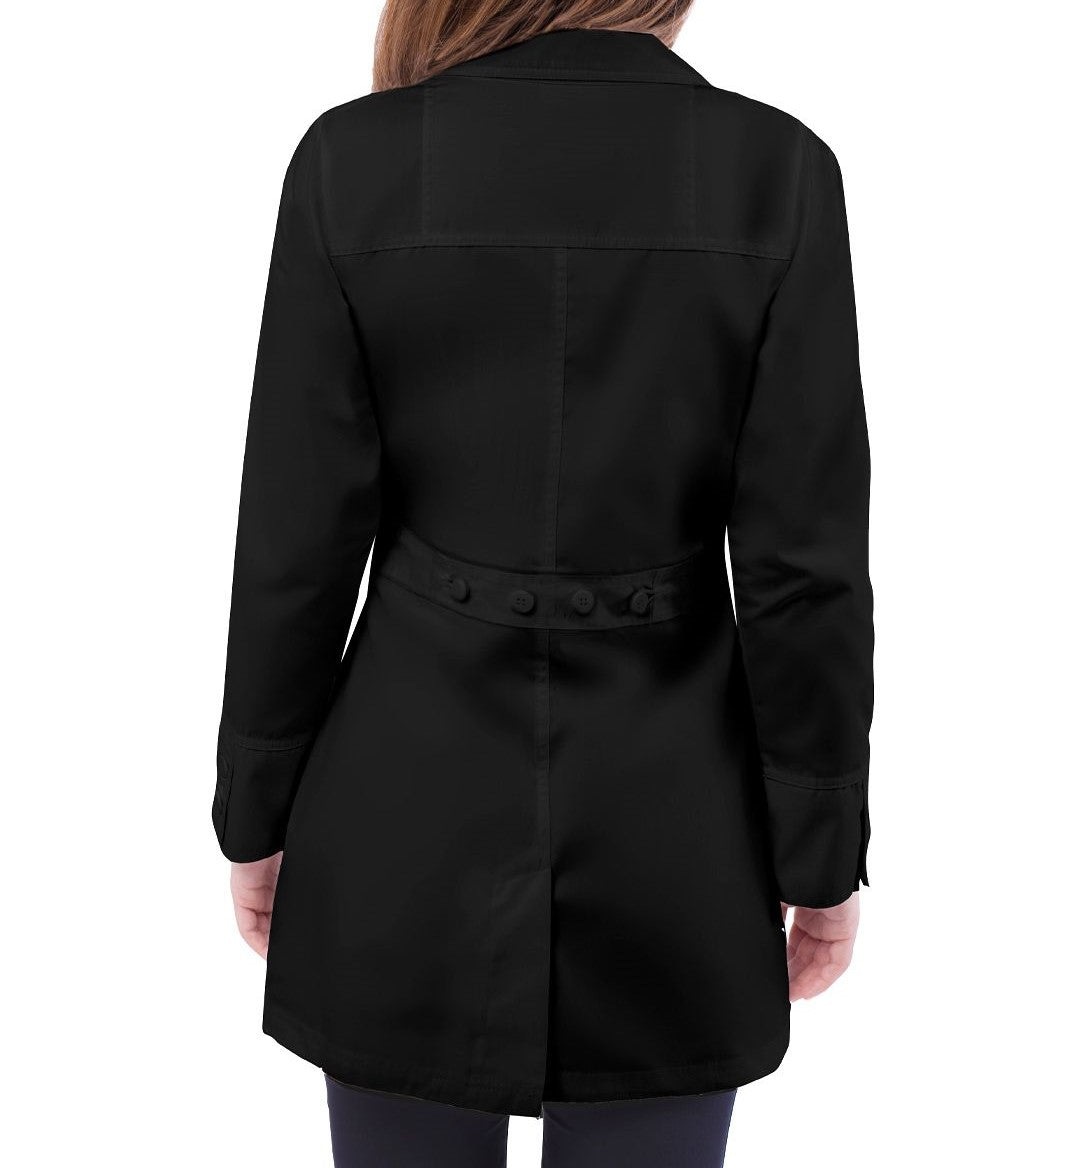 Women's 32" Black Lab Coat